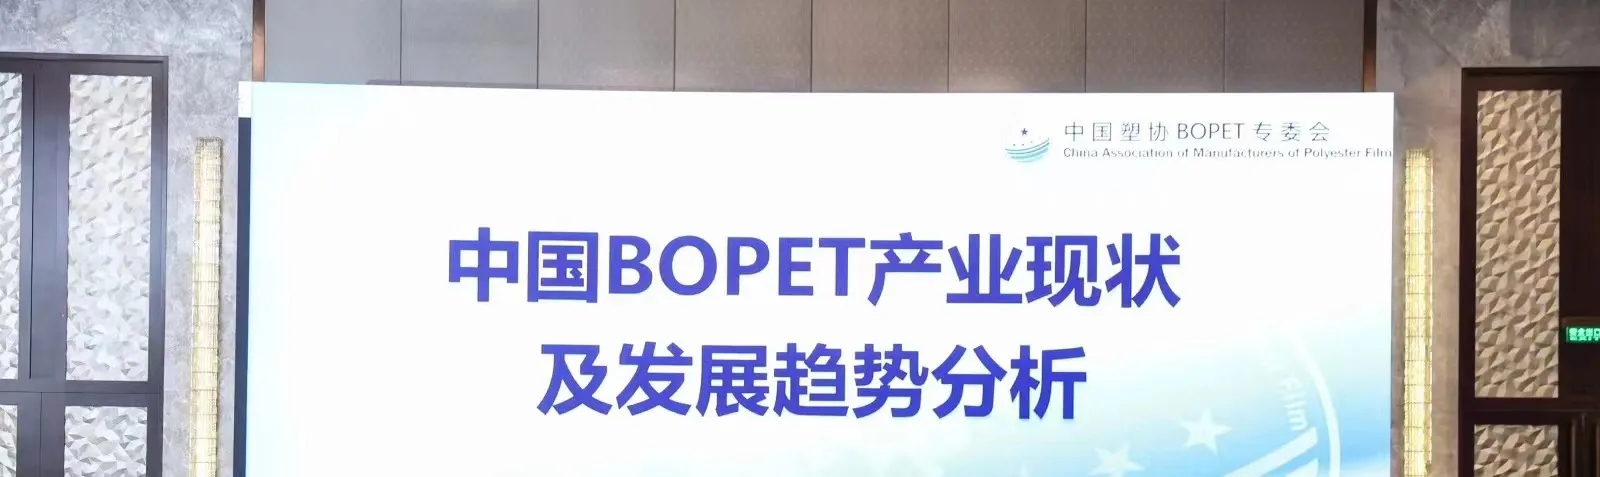 Conférence sur la situation actuelle et les tendances de développement de l'industrie chinoise du BOPET